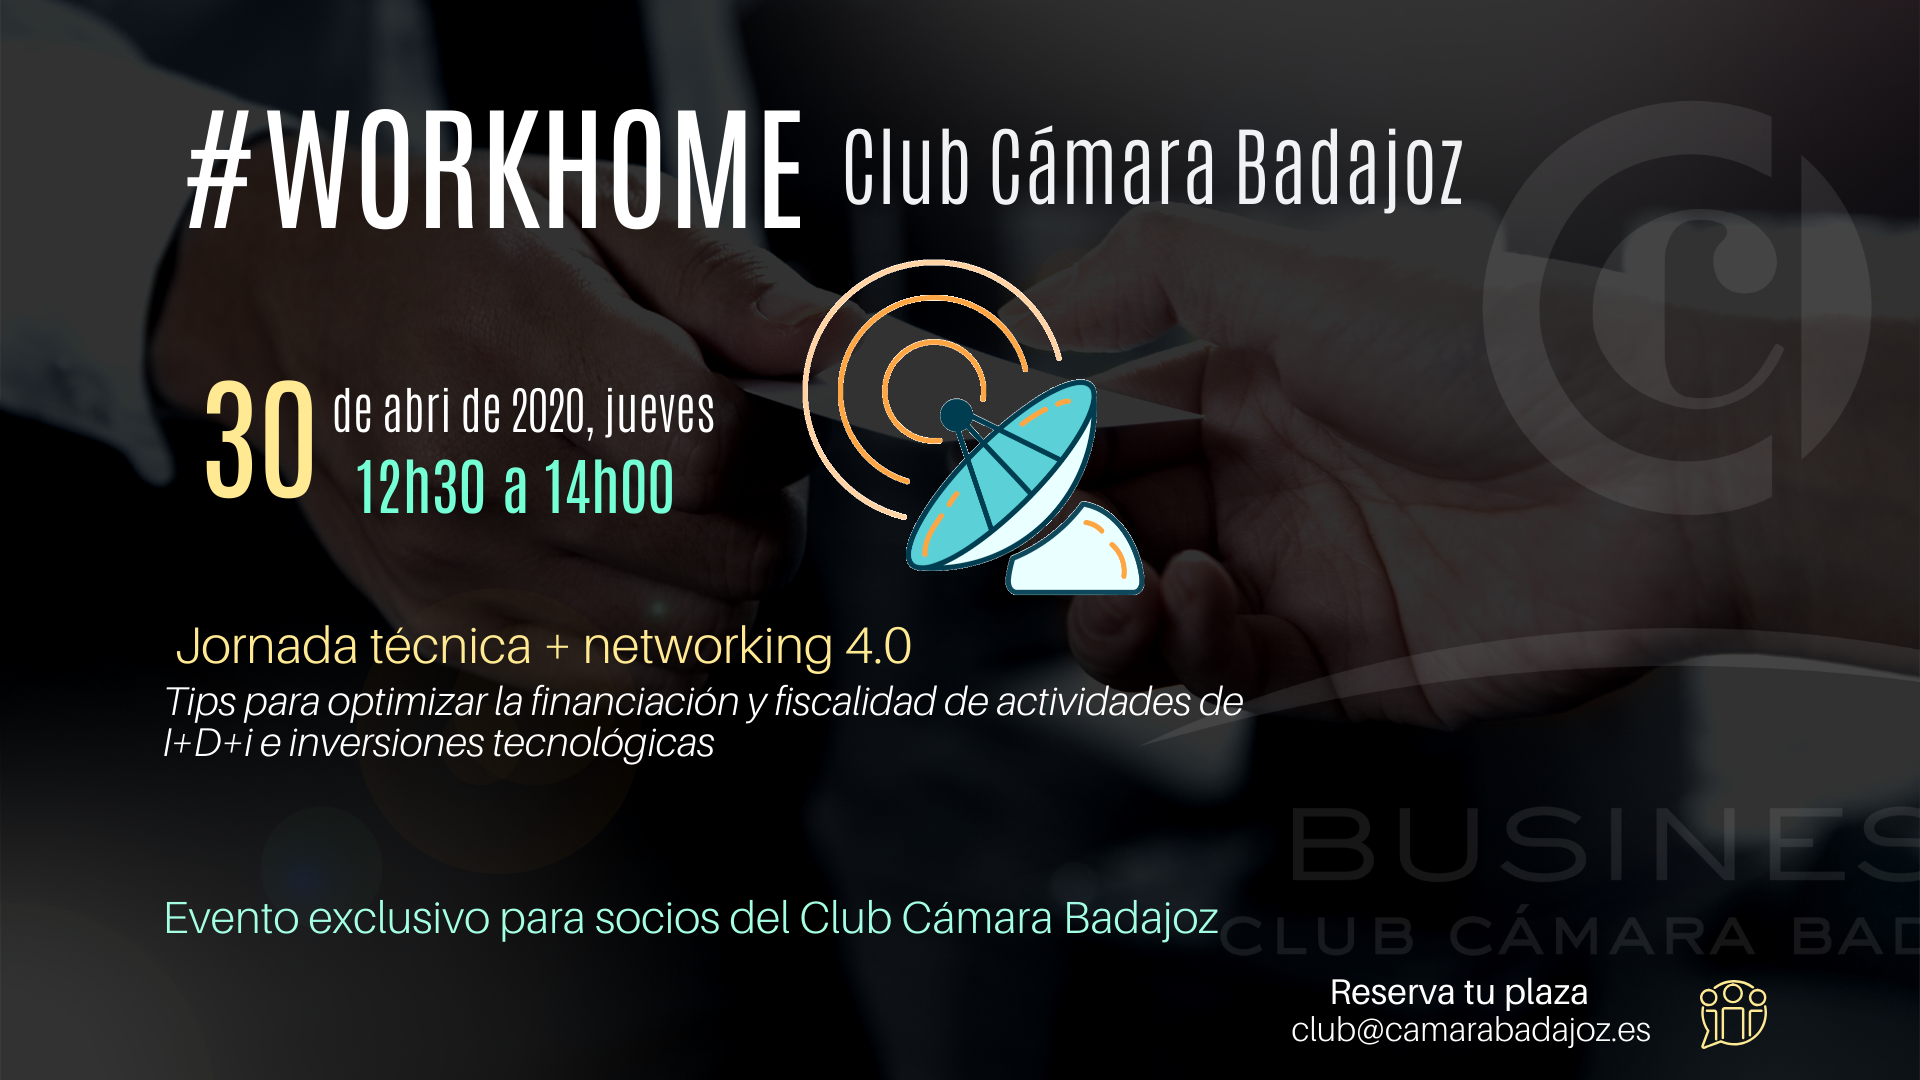 WORKHOME Club Cámara Badajoz: “Tips para optimizar la financiación y fiscalidad de actividades de I+D+i e inversiones tecnológicas”  + networking 4.0